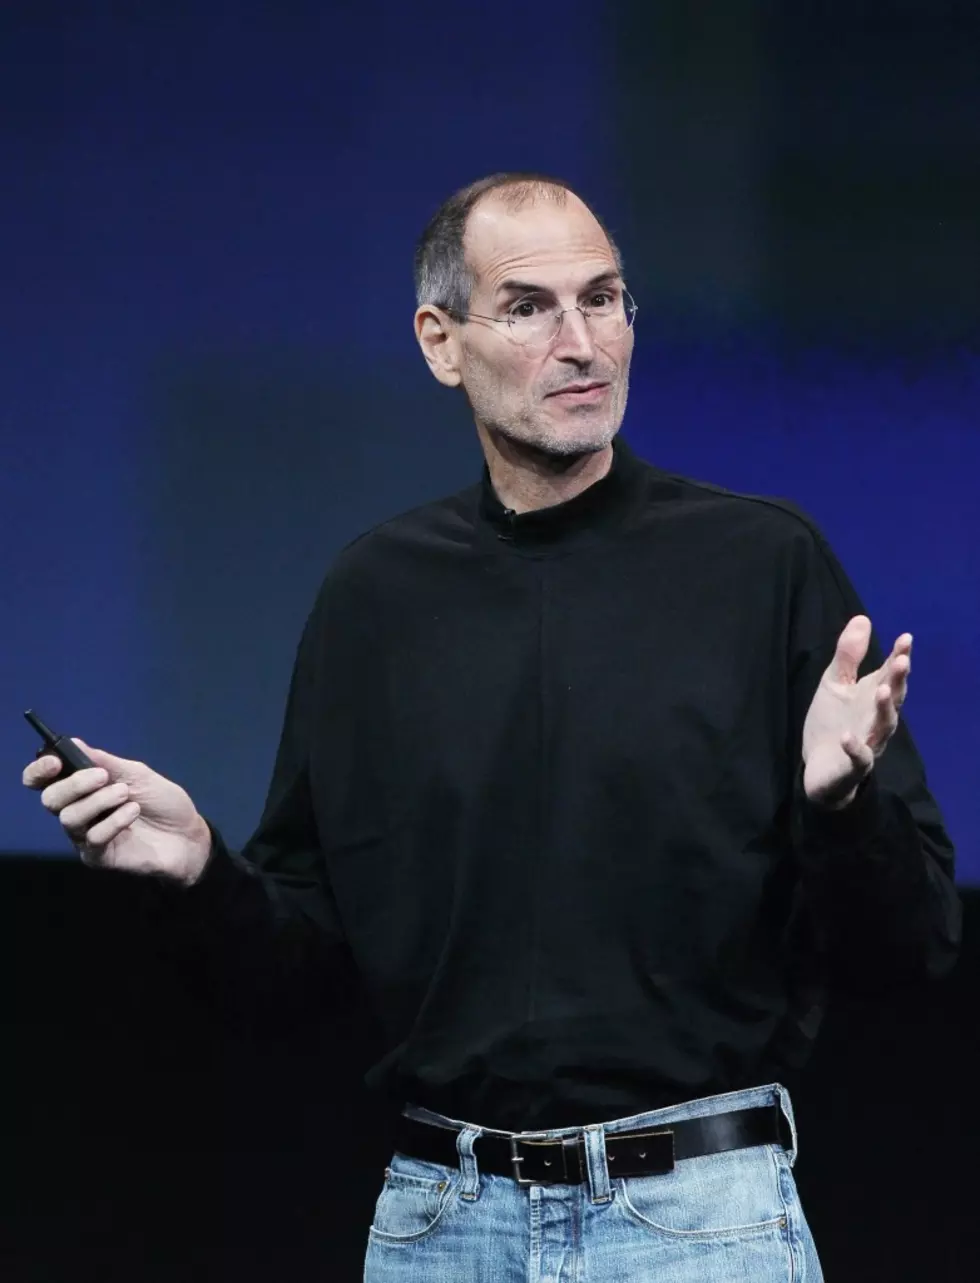 Does Steve Jobs Secretly Have Cancer?